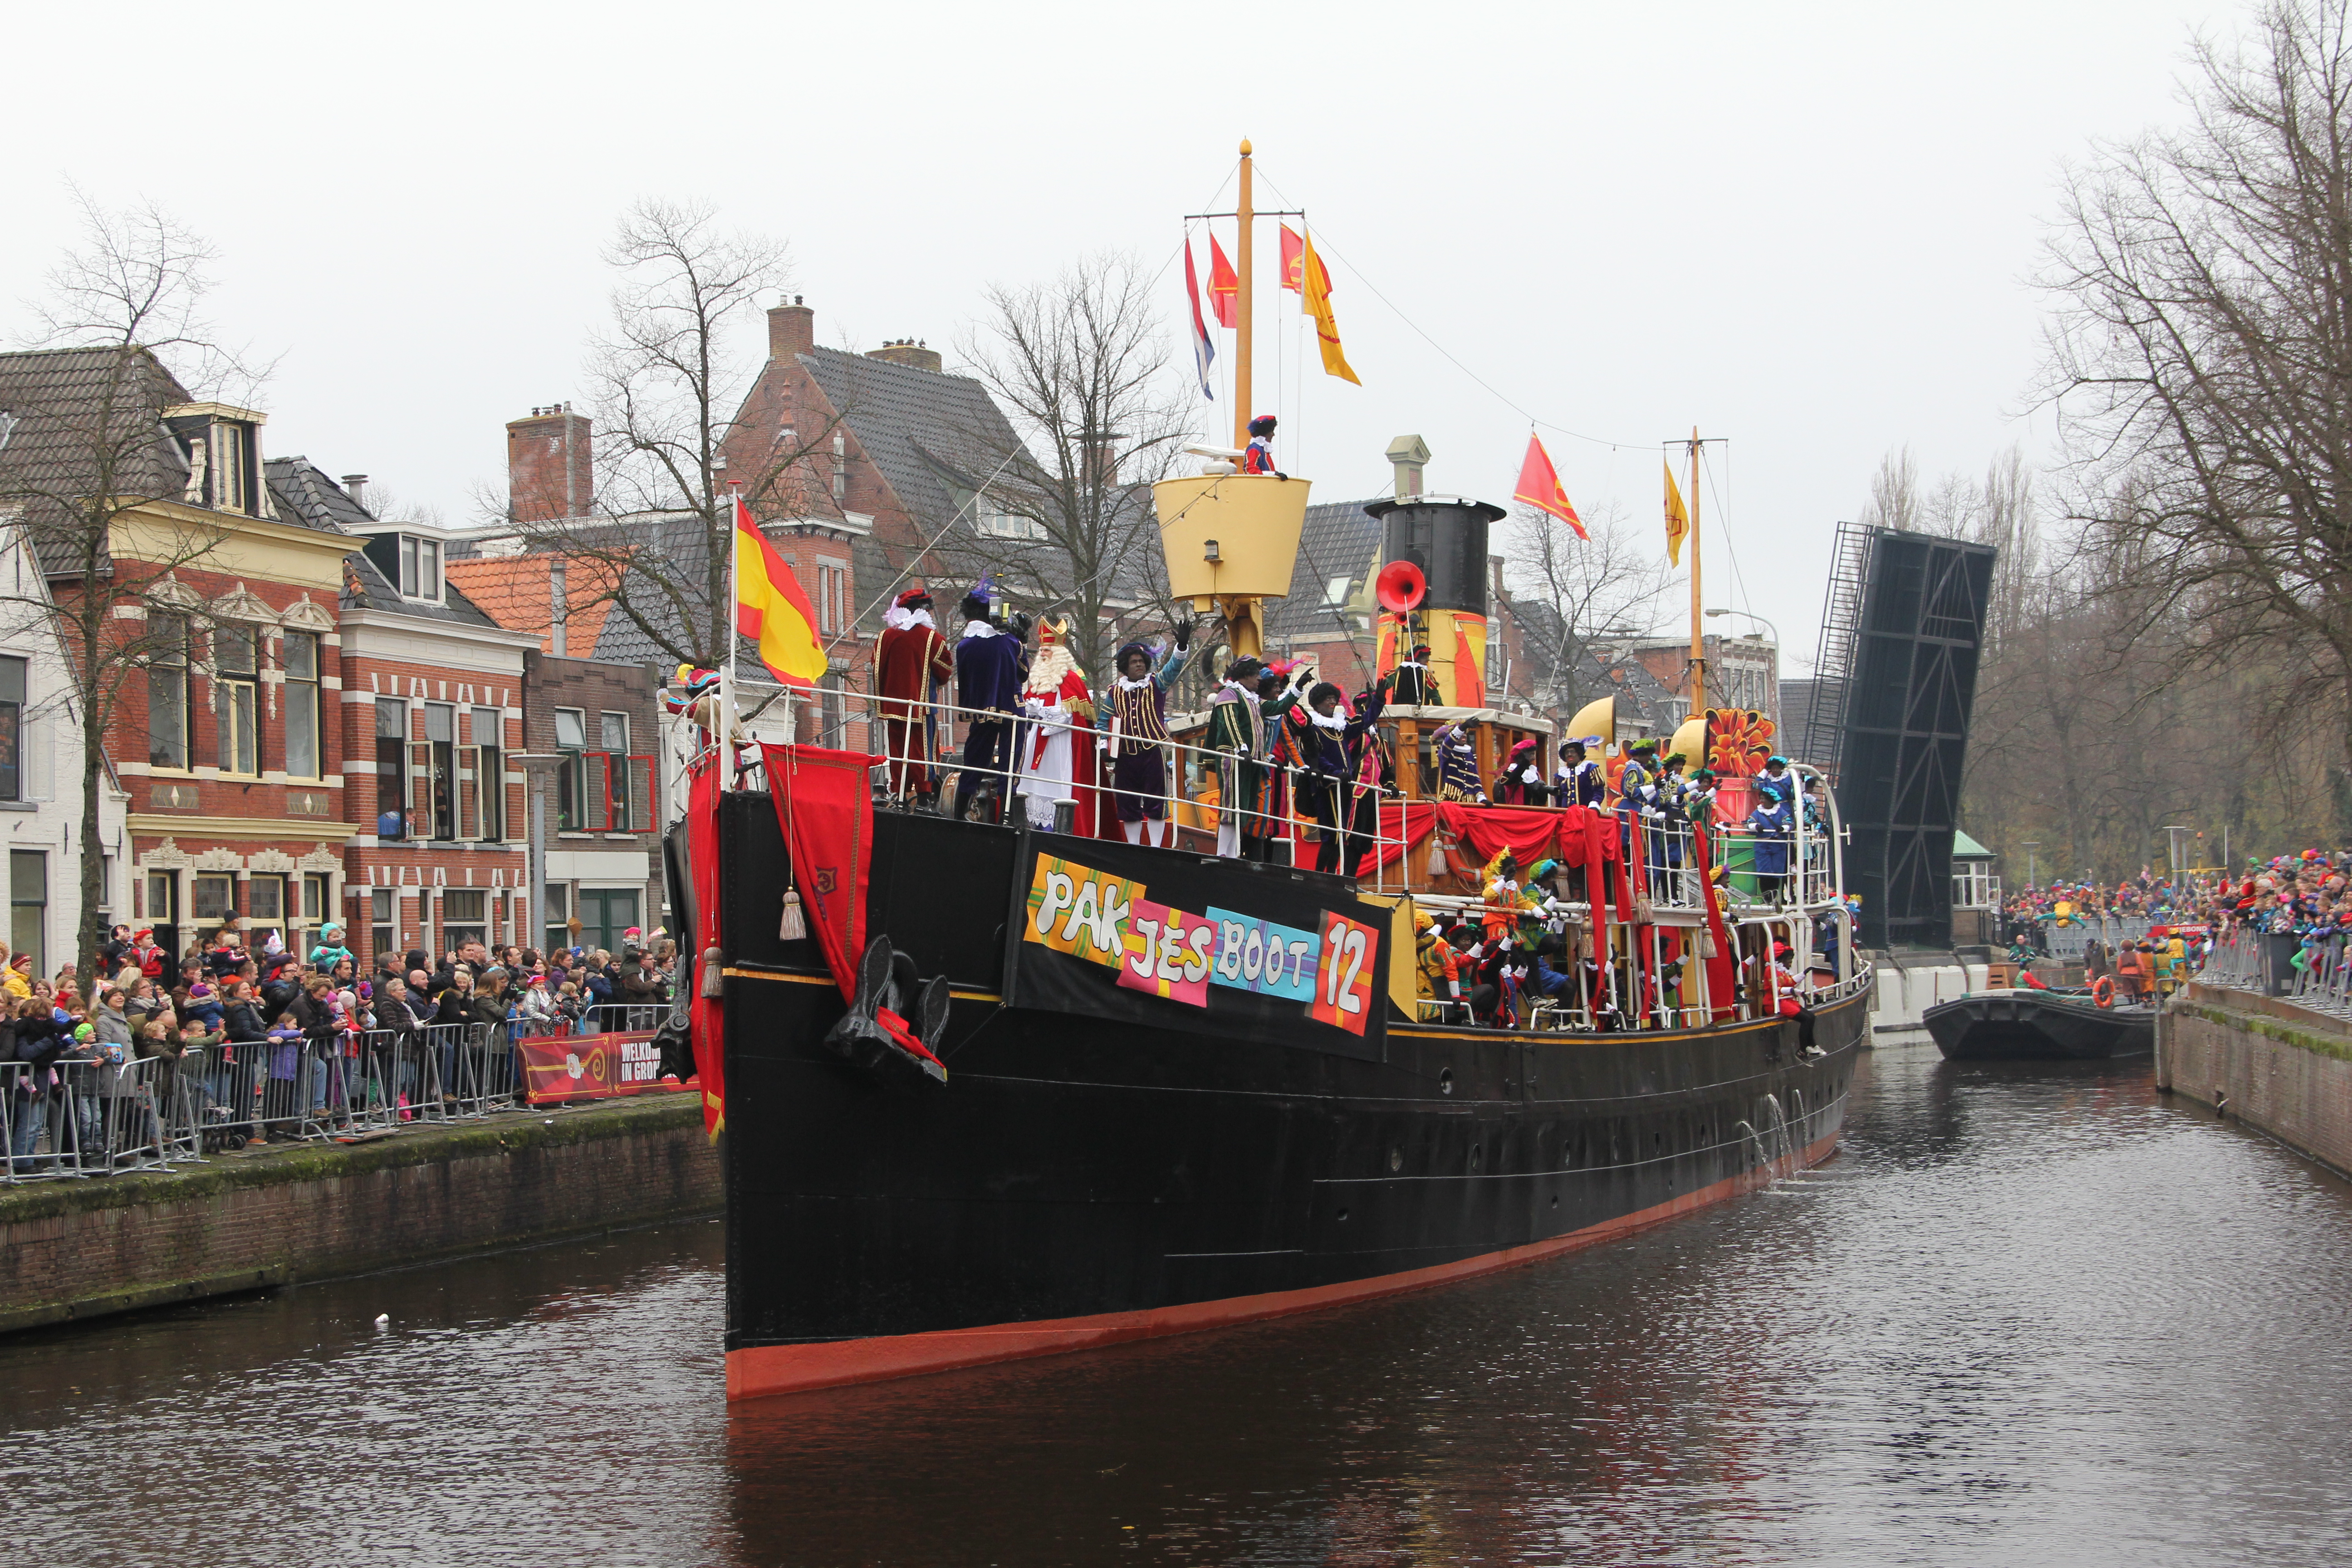 Vul in Afleiding gesprek Landelijke intocht van Sinterklaas - Wikipedia